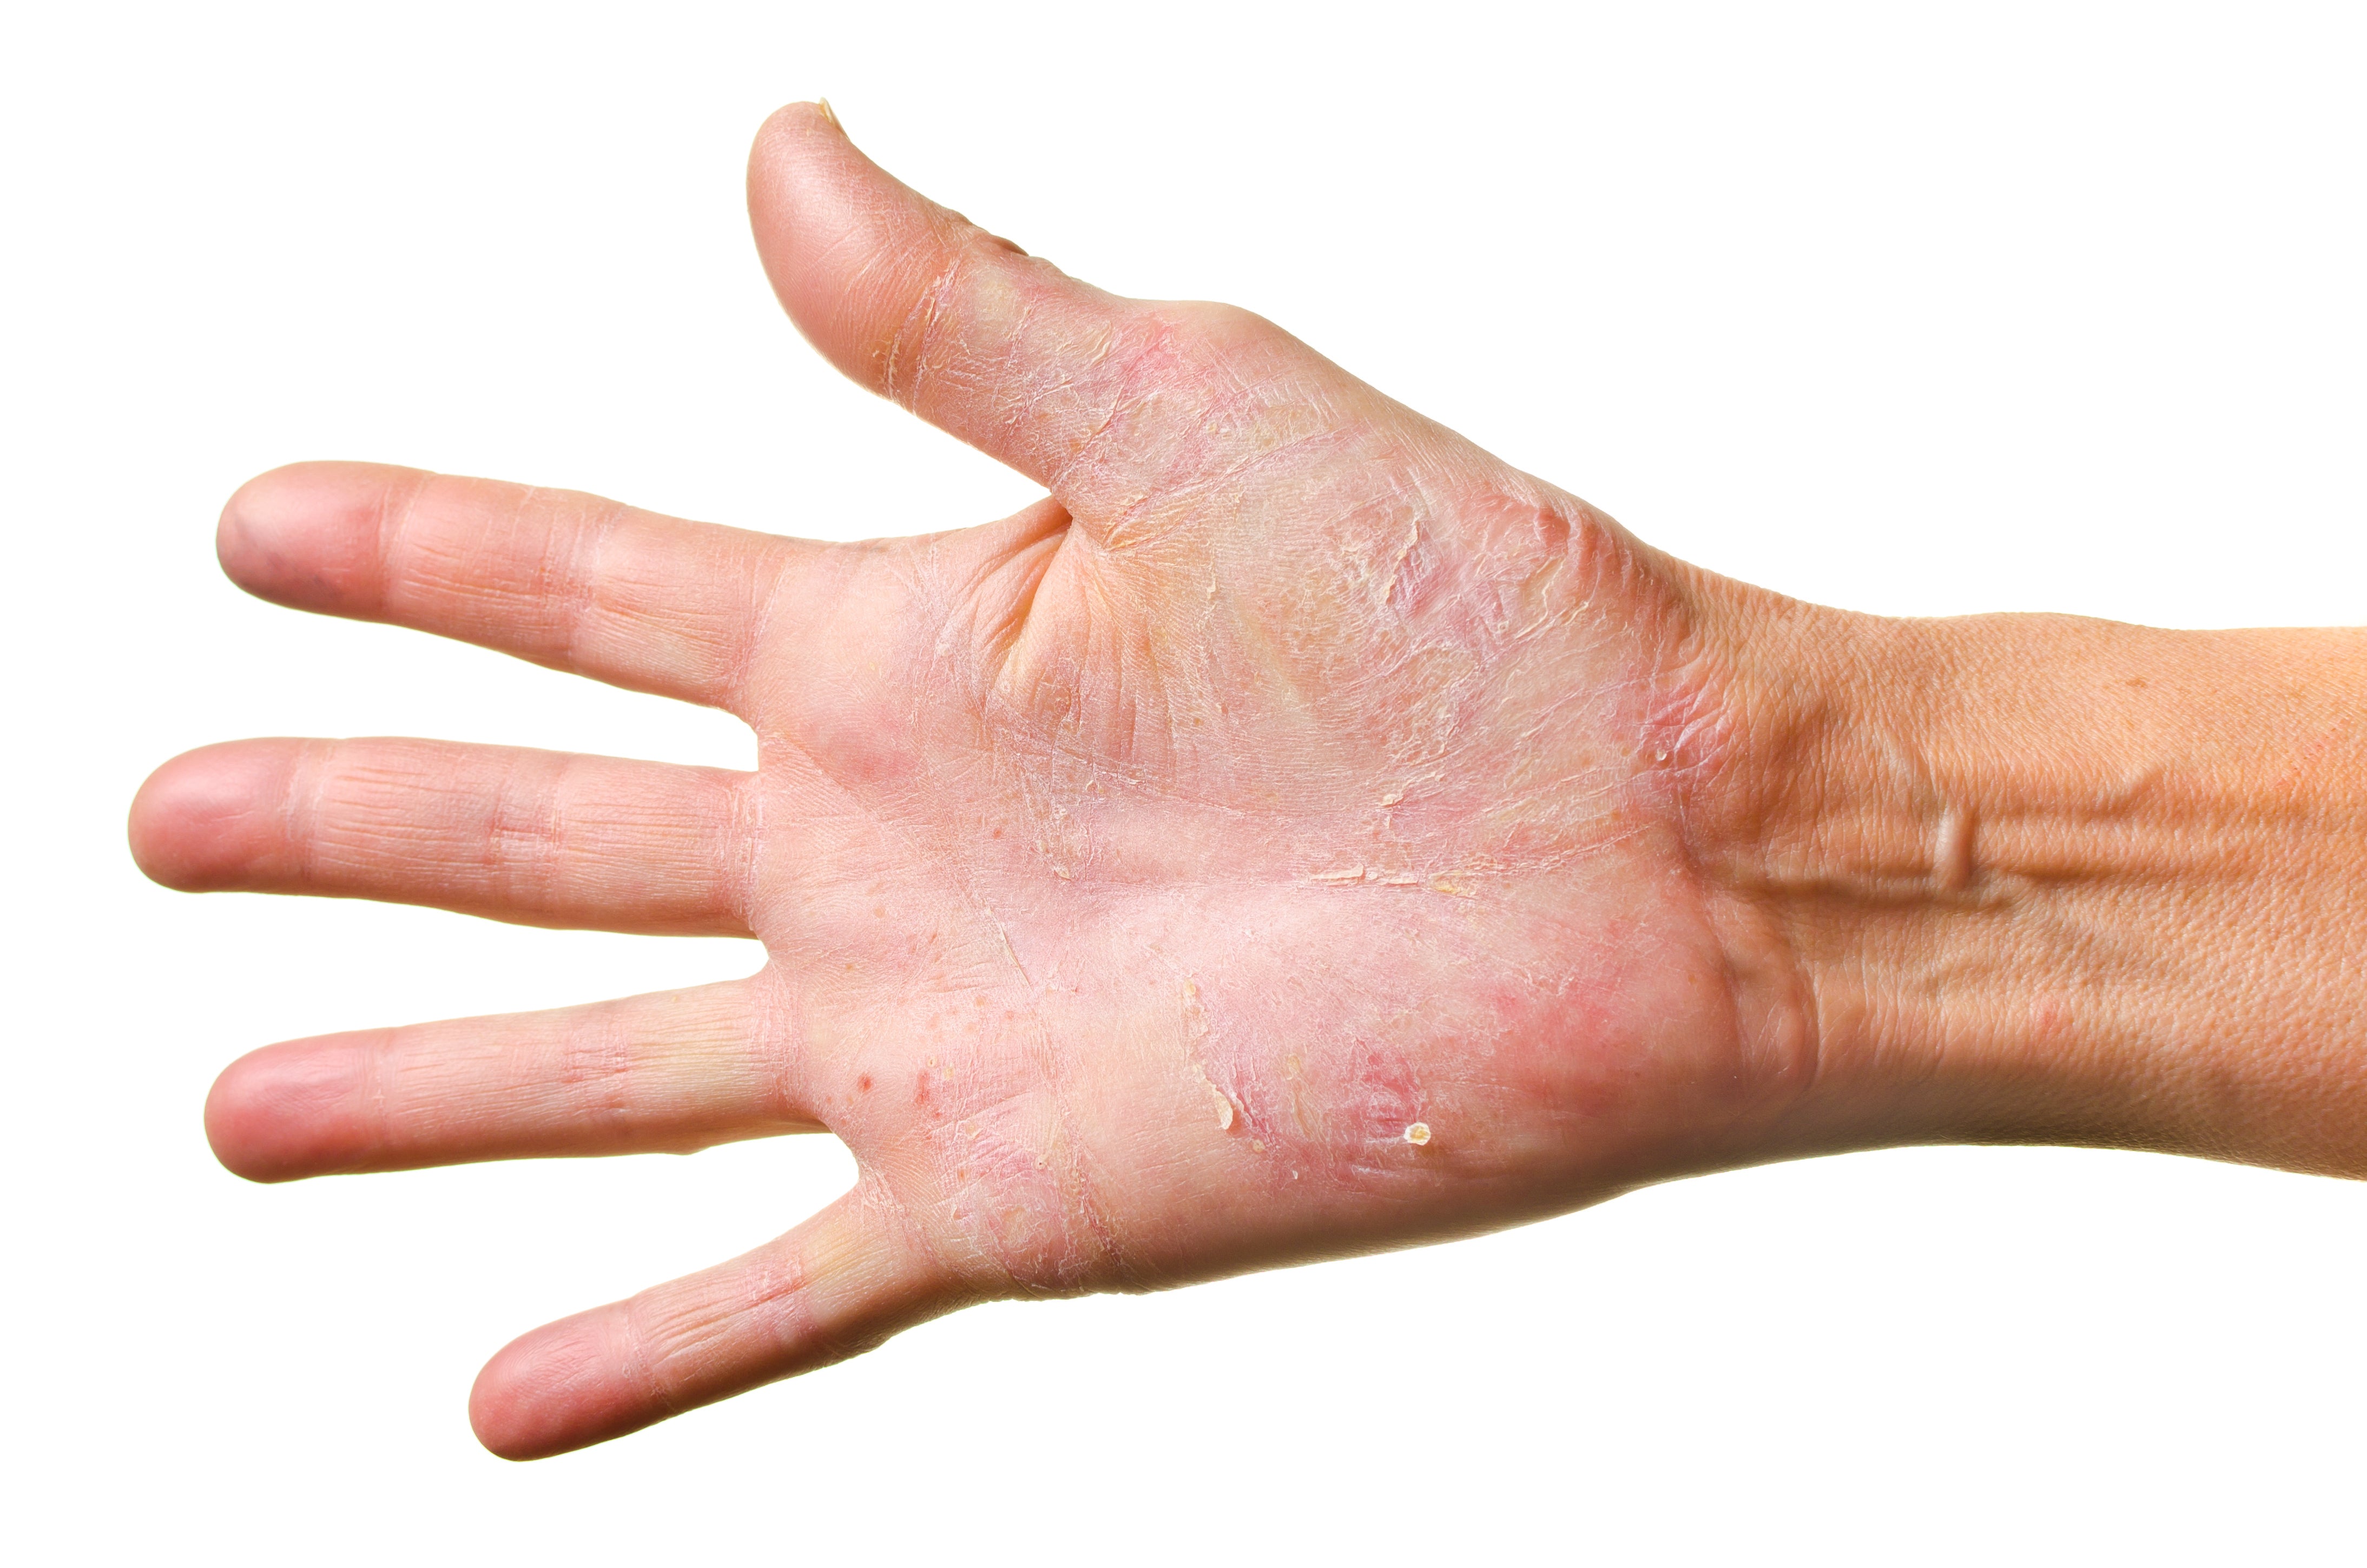 Eczema & Dry Skin